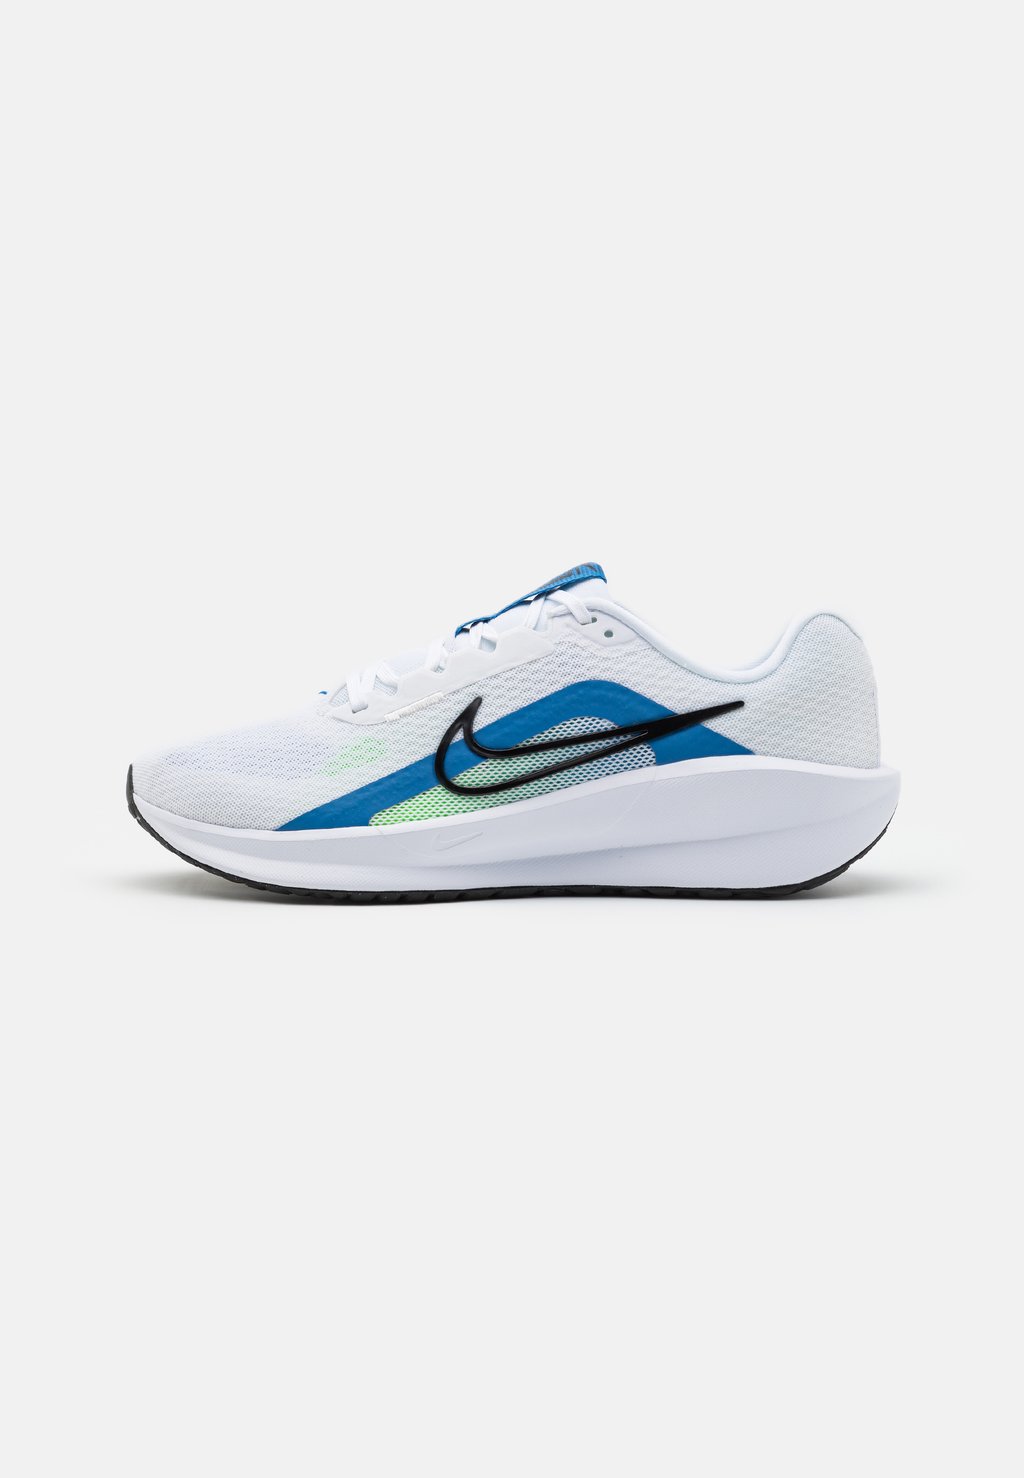 Нейтральные кроссовки DOWNSHIFTER 13 Nike, цвет white/black/star blue/green strike/light armoy blue/platinum tint цена и фото